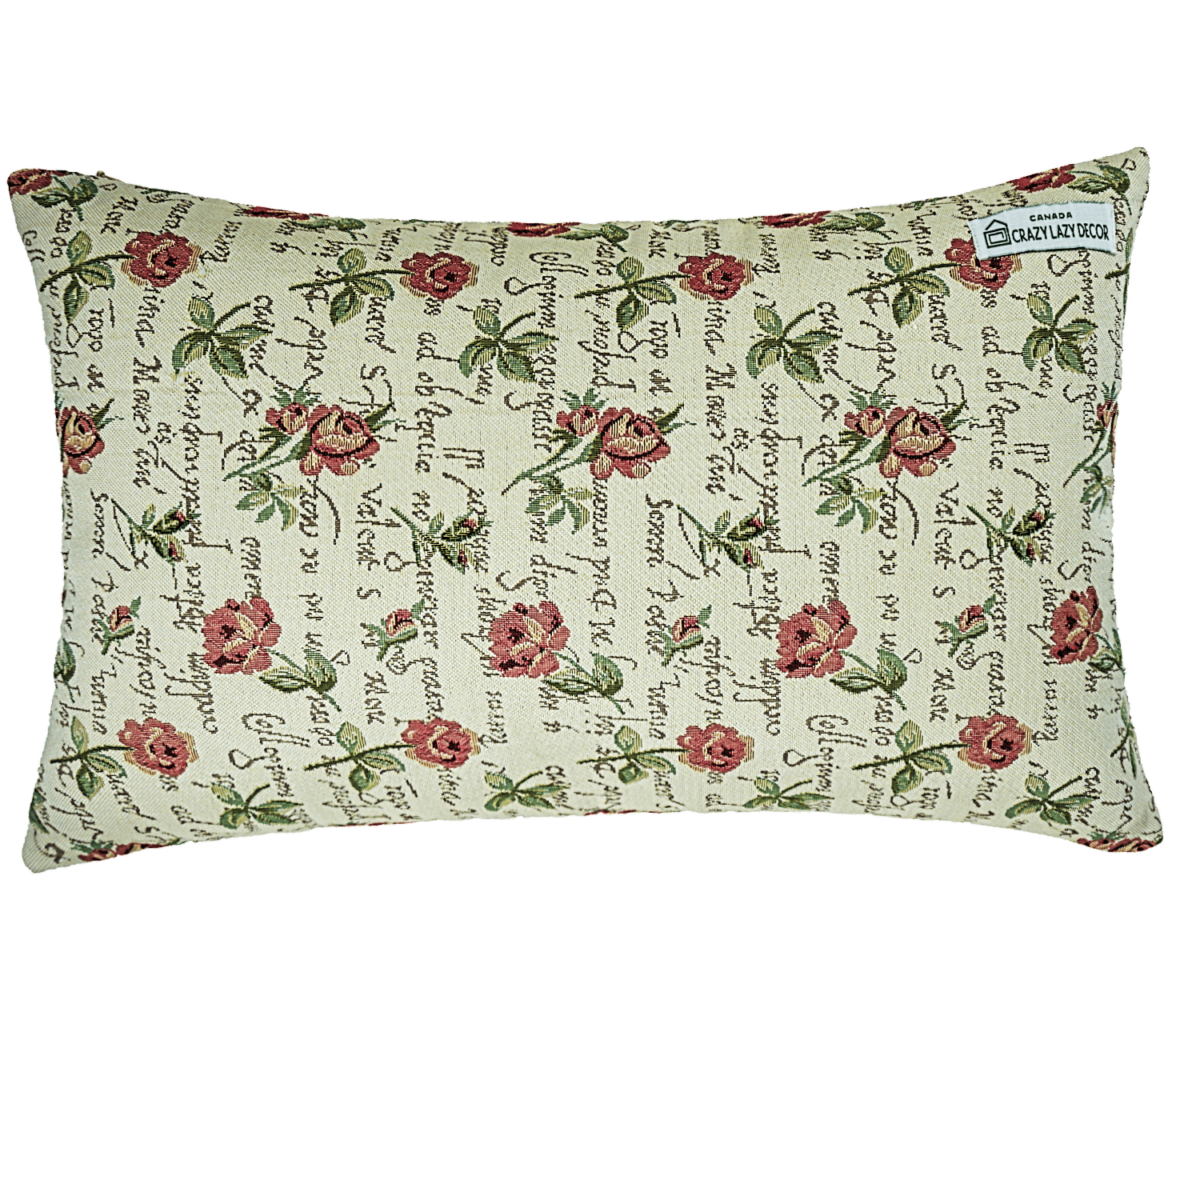 Woven rose lumbar pillow cover